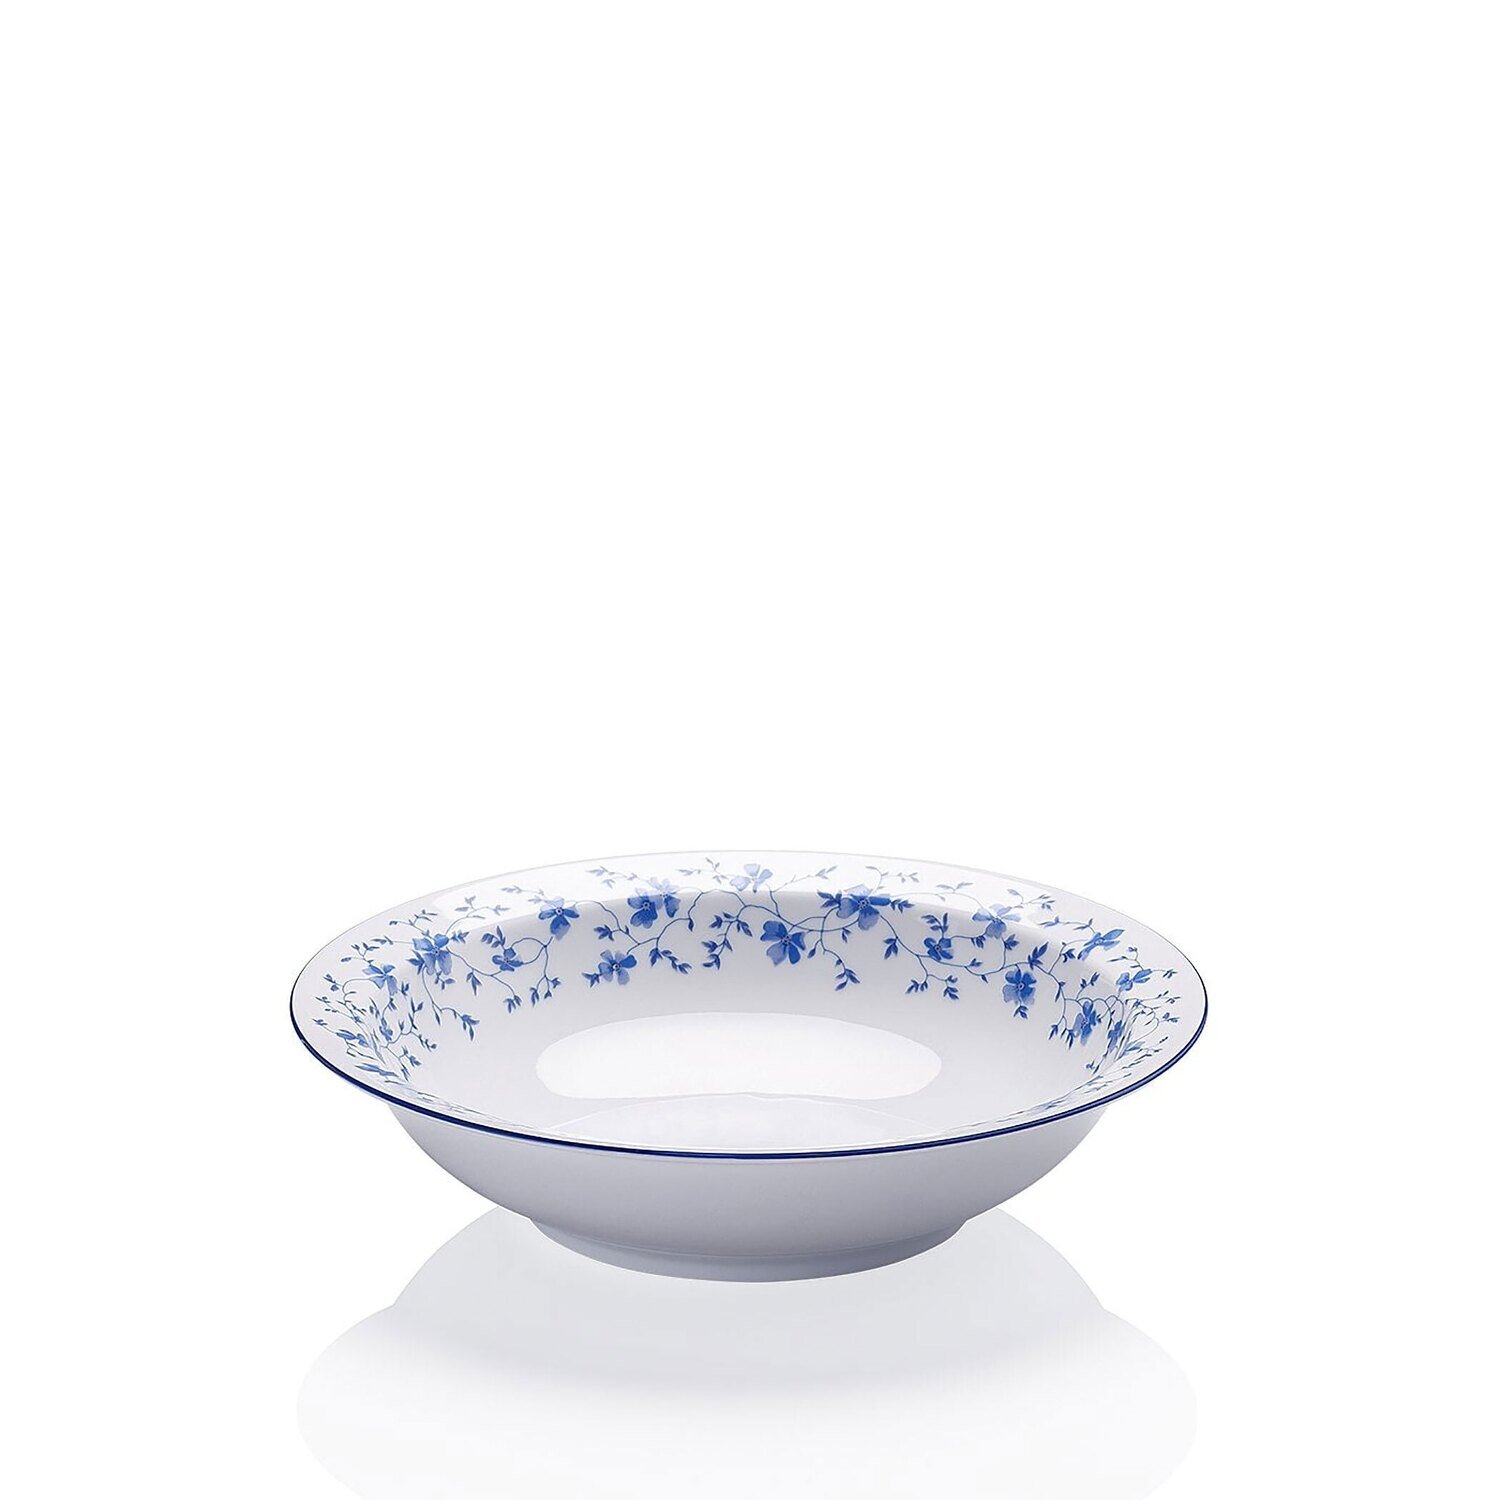 Arzberg Form 1382 Blaubluten Bowl 23 Cm